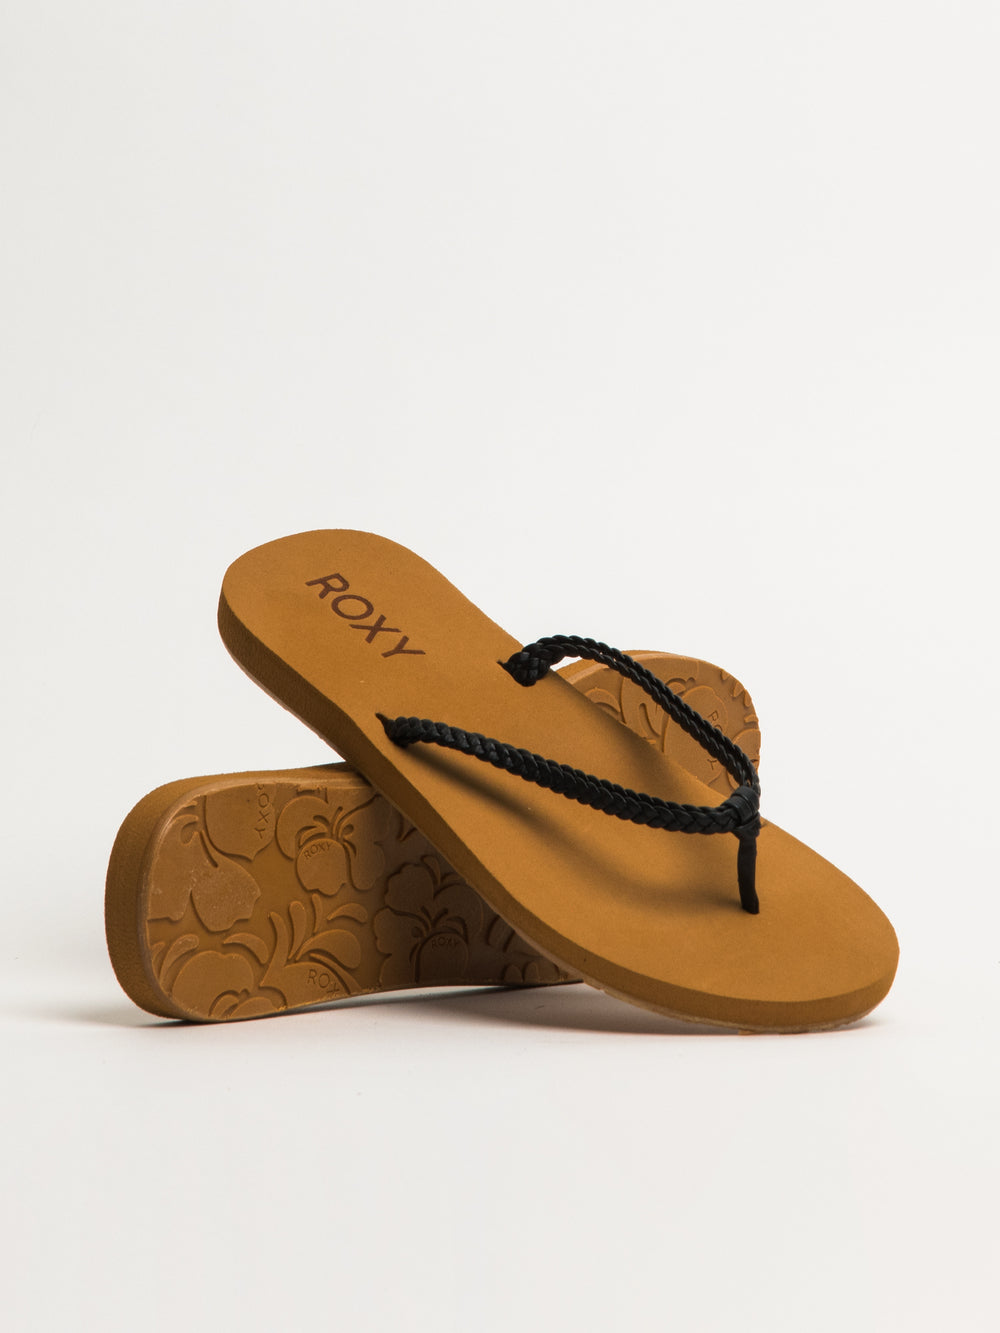 Roxy Costas White Sandals